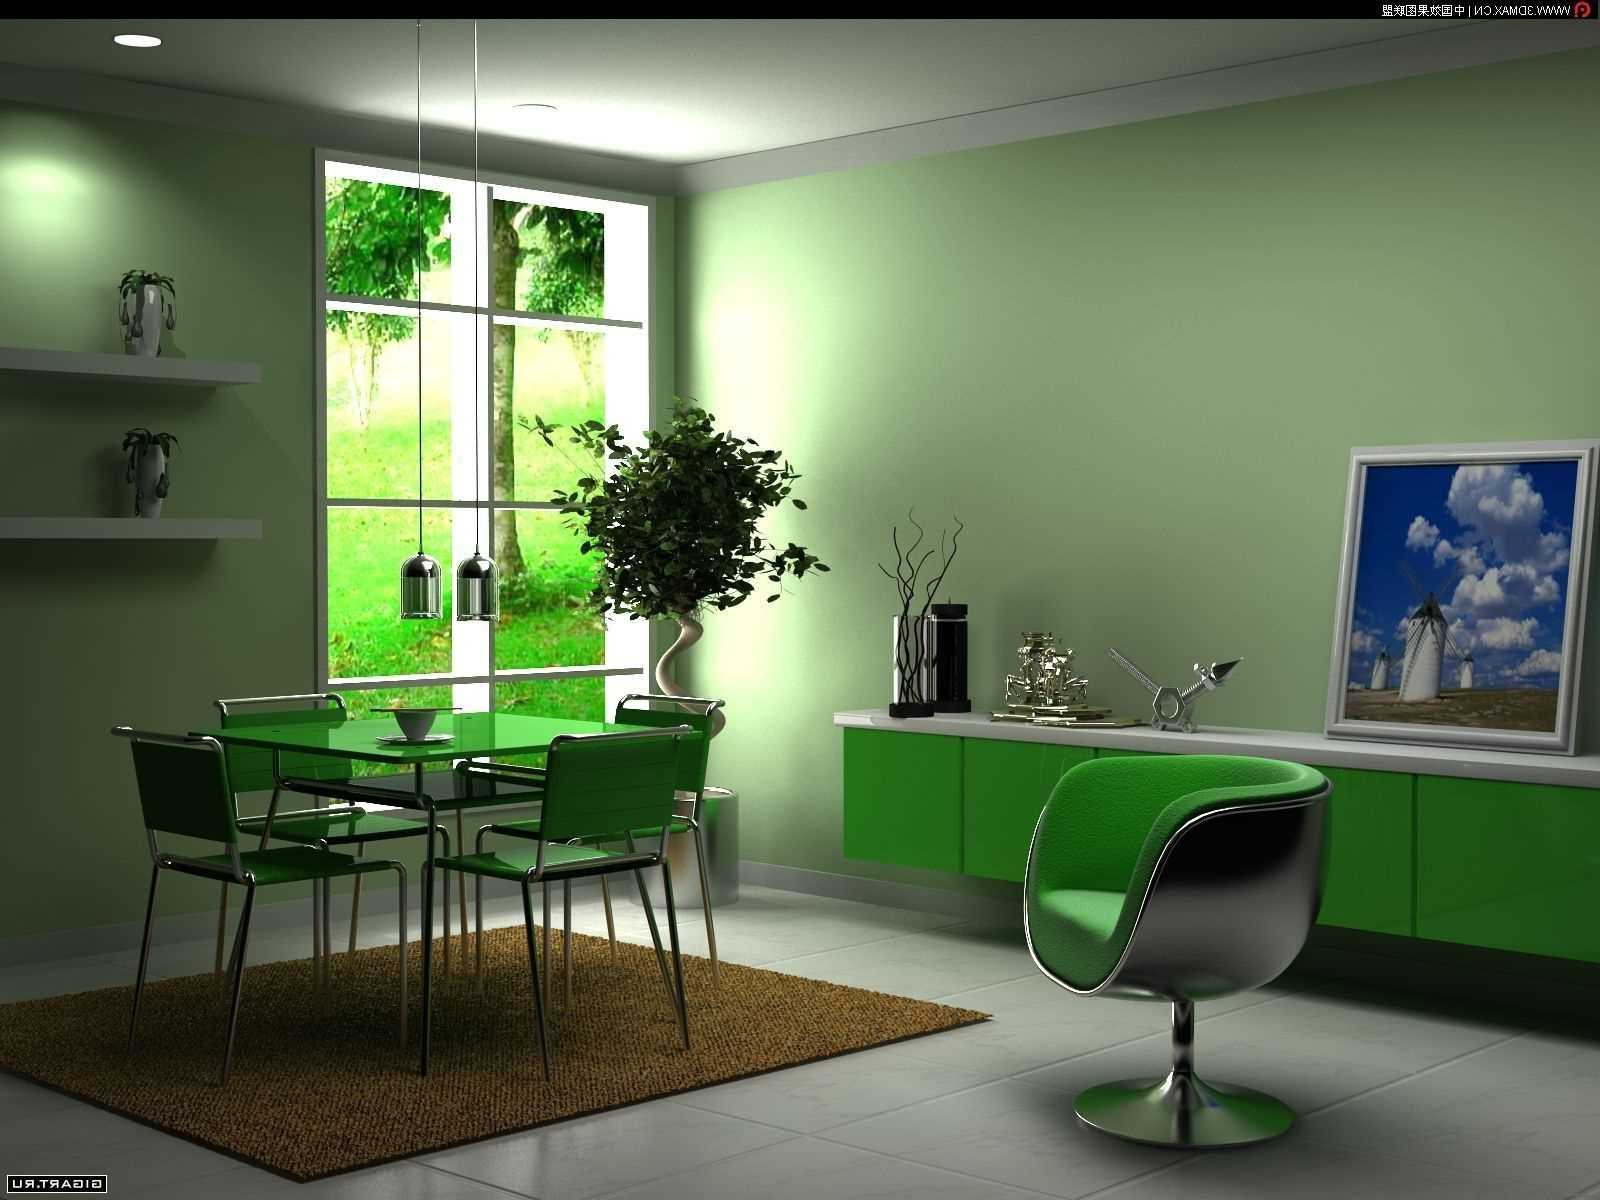 l'utilisation du vert dans un design d'appartement insolite